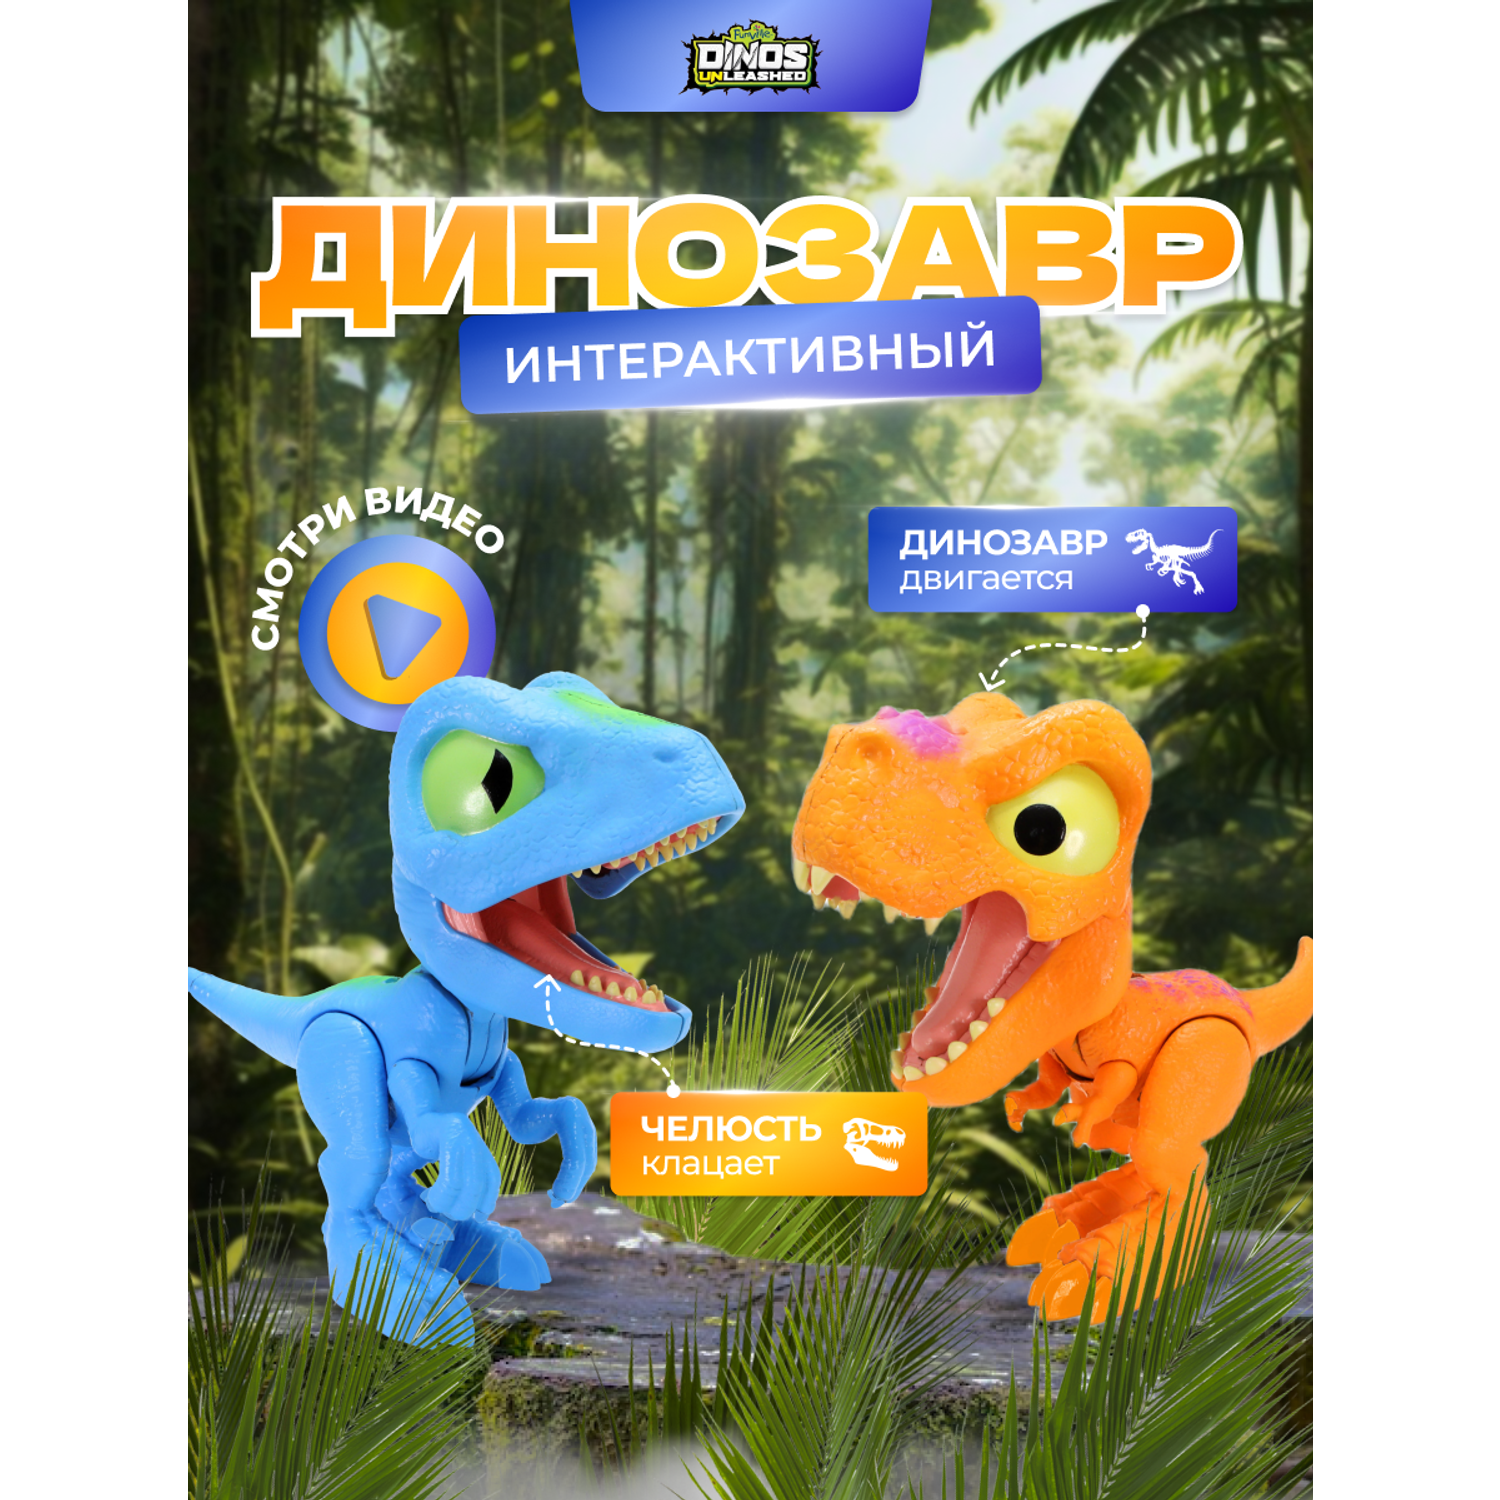 Фигурка динозавра Dinos Unleashed набор из 2 штук клацающих динозавров - фото 6